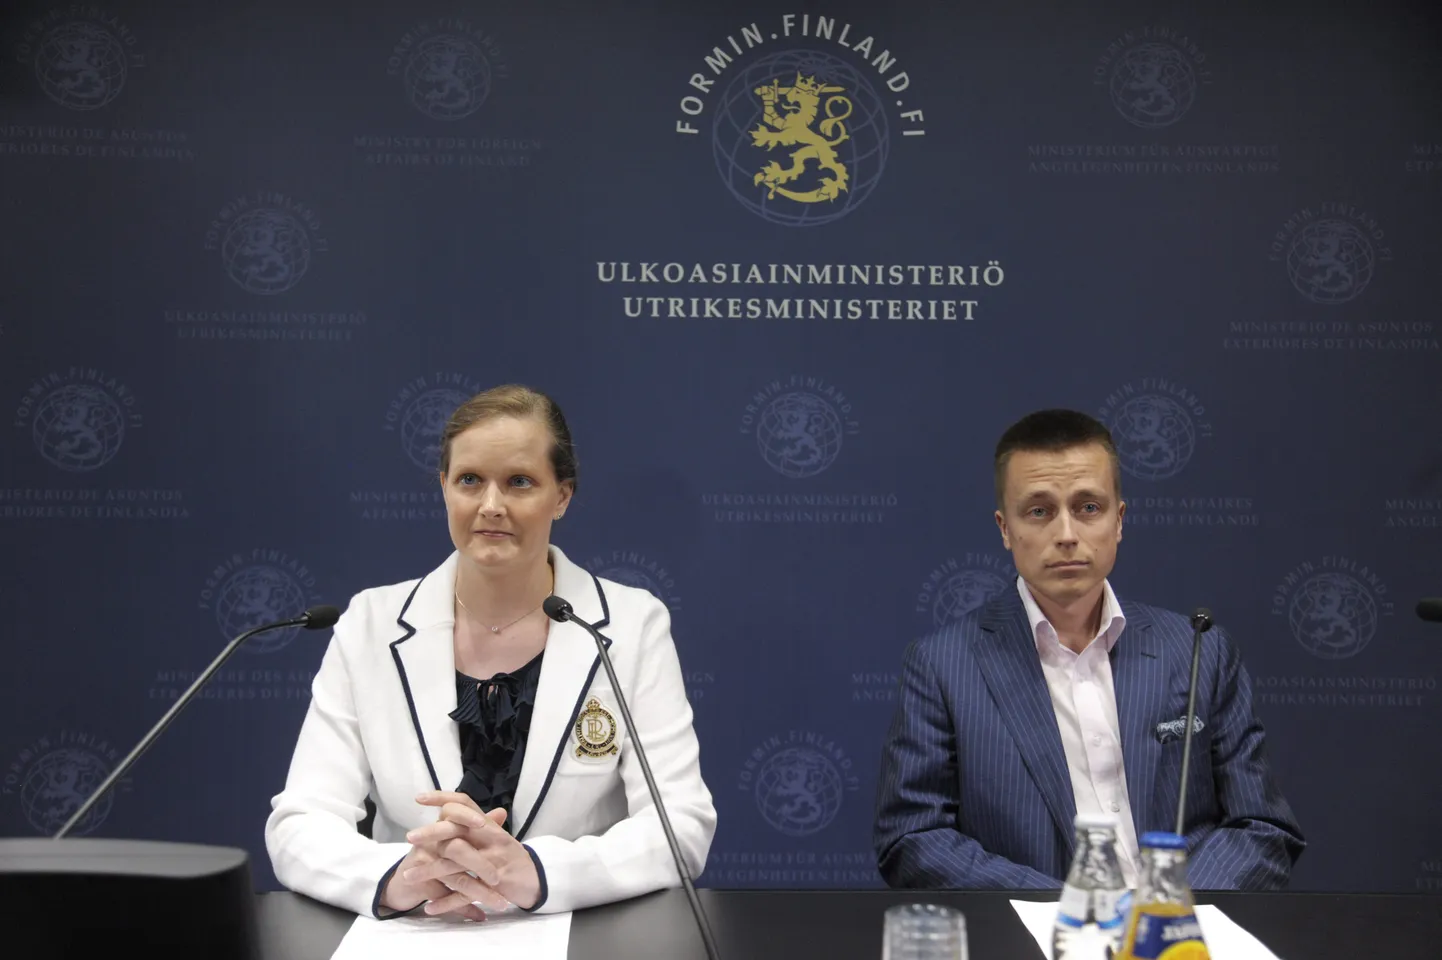 Leila ja Atte Kaleva Helsingis peetud pressikonverentsil 2013. aasta mais, kus nad rääkisid pantvangidraama tagamaadest.